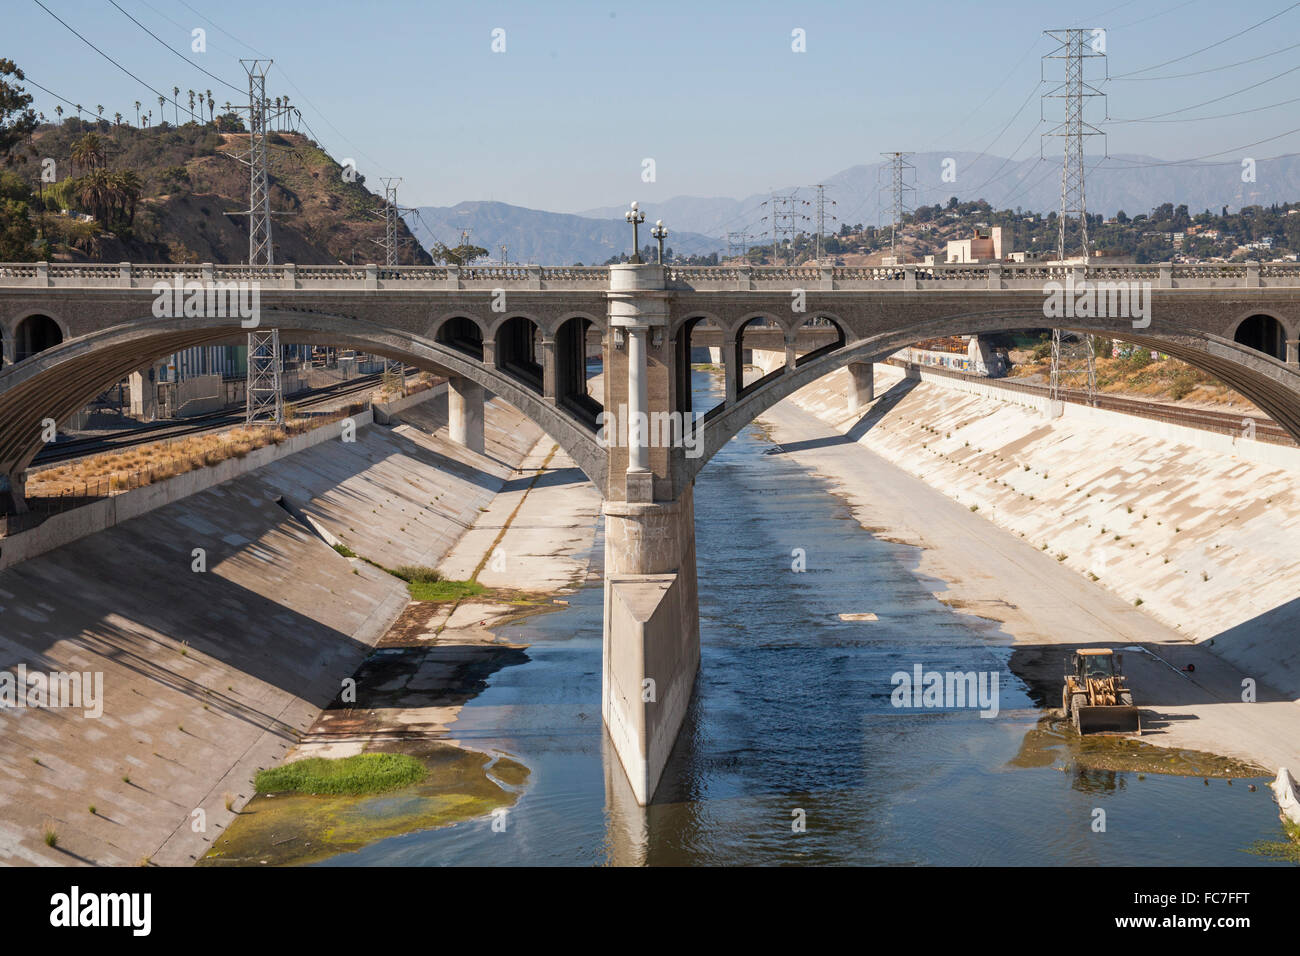 puente-acueducto-urbano-del-rio-de-los-angeles-los-angeles-california-estados-unidos-fc7fft.jpg